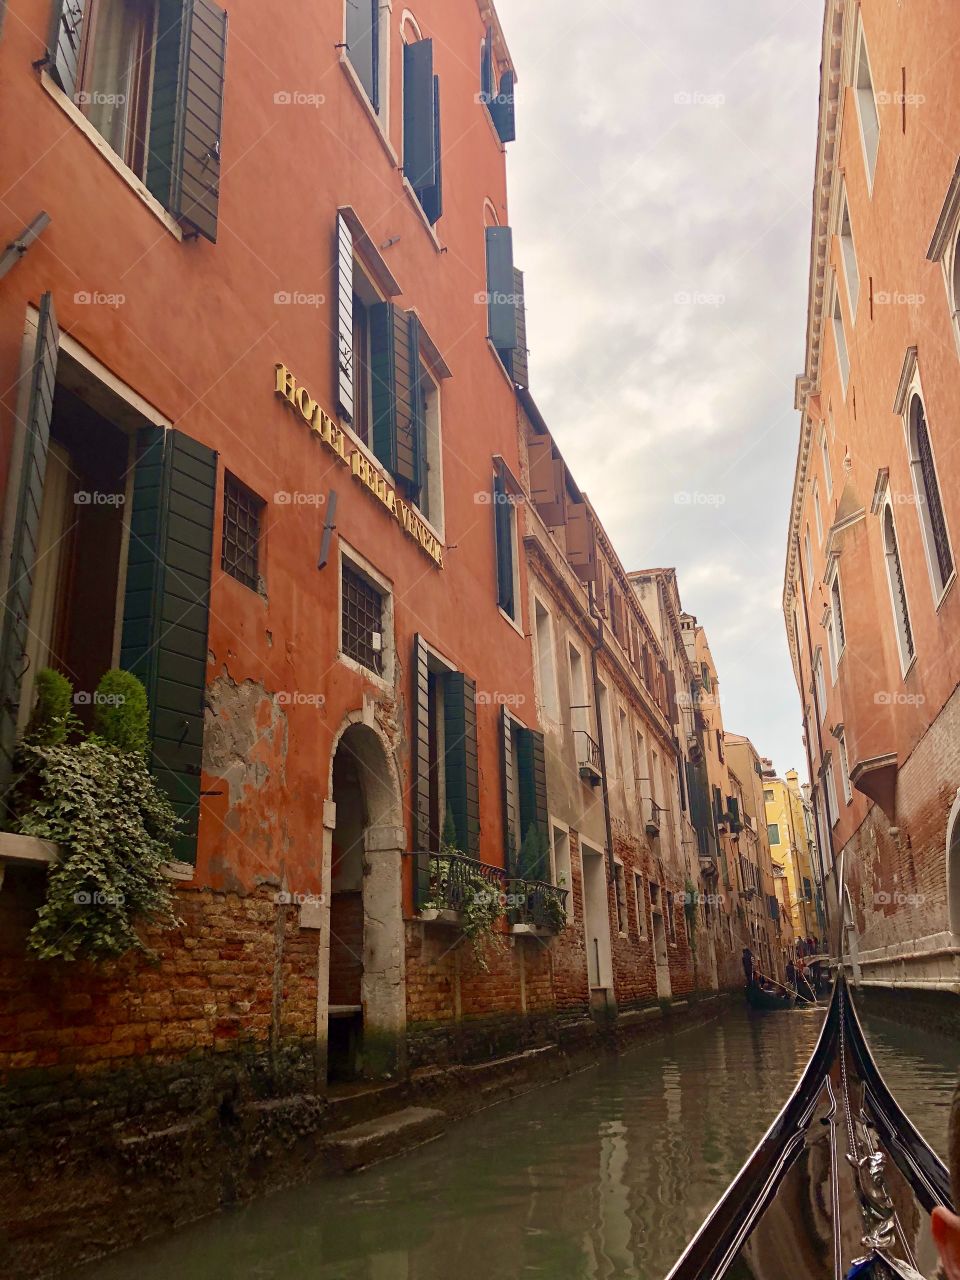 Gondola ride down narrow canals - Venice, Italy